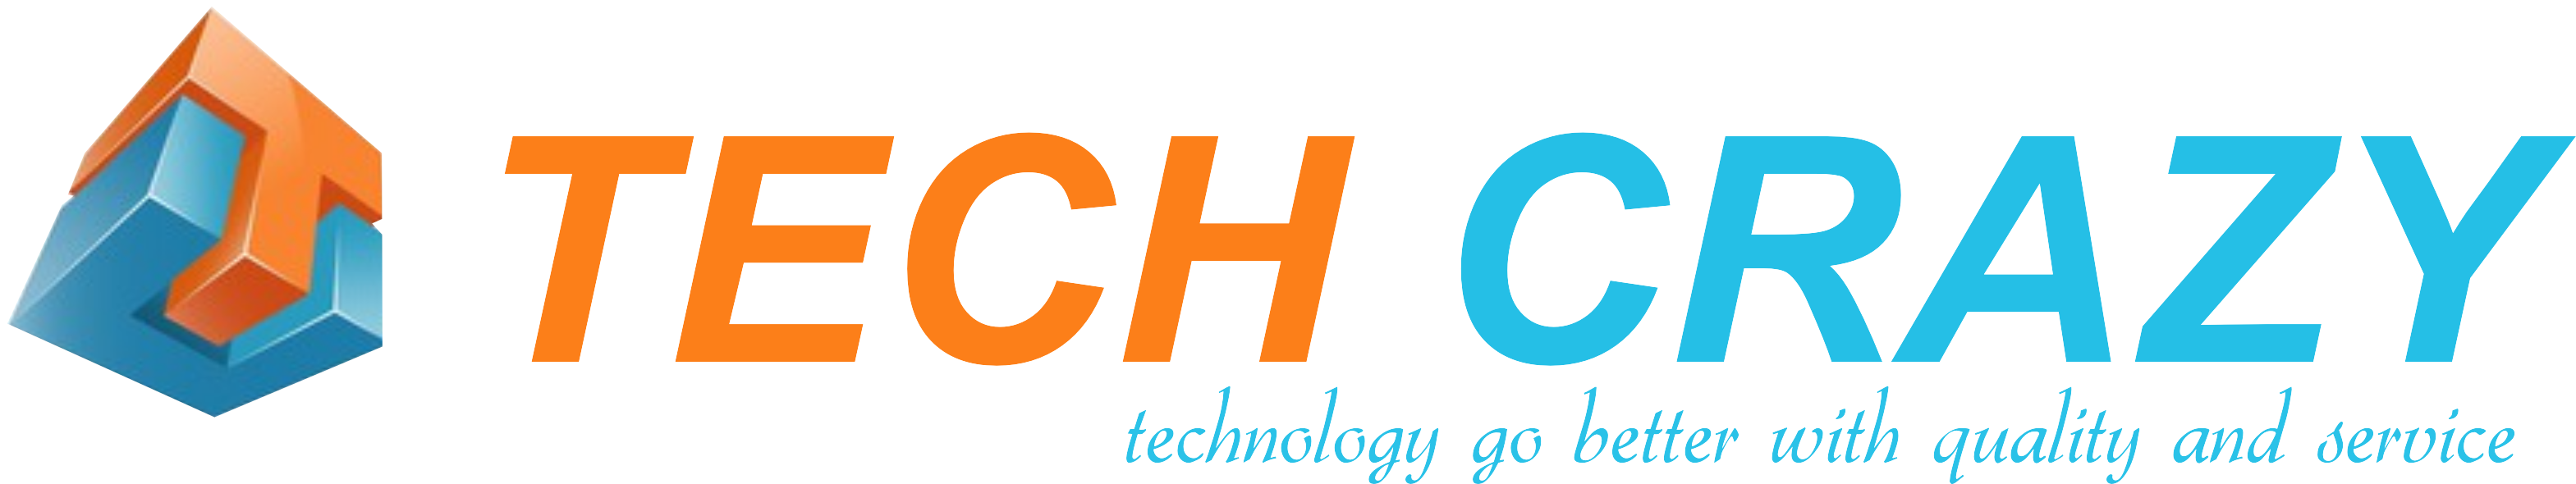 techcrazy-logo